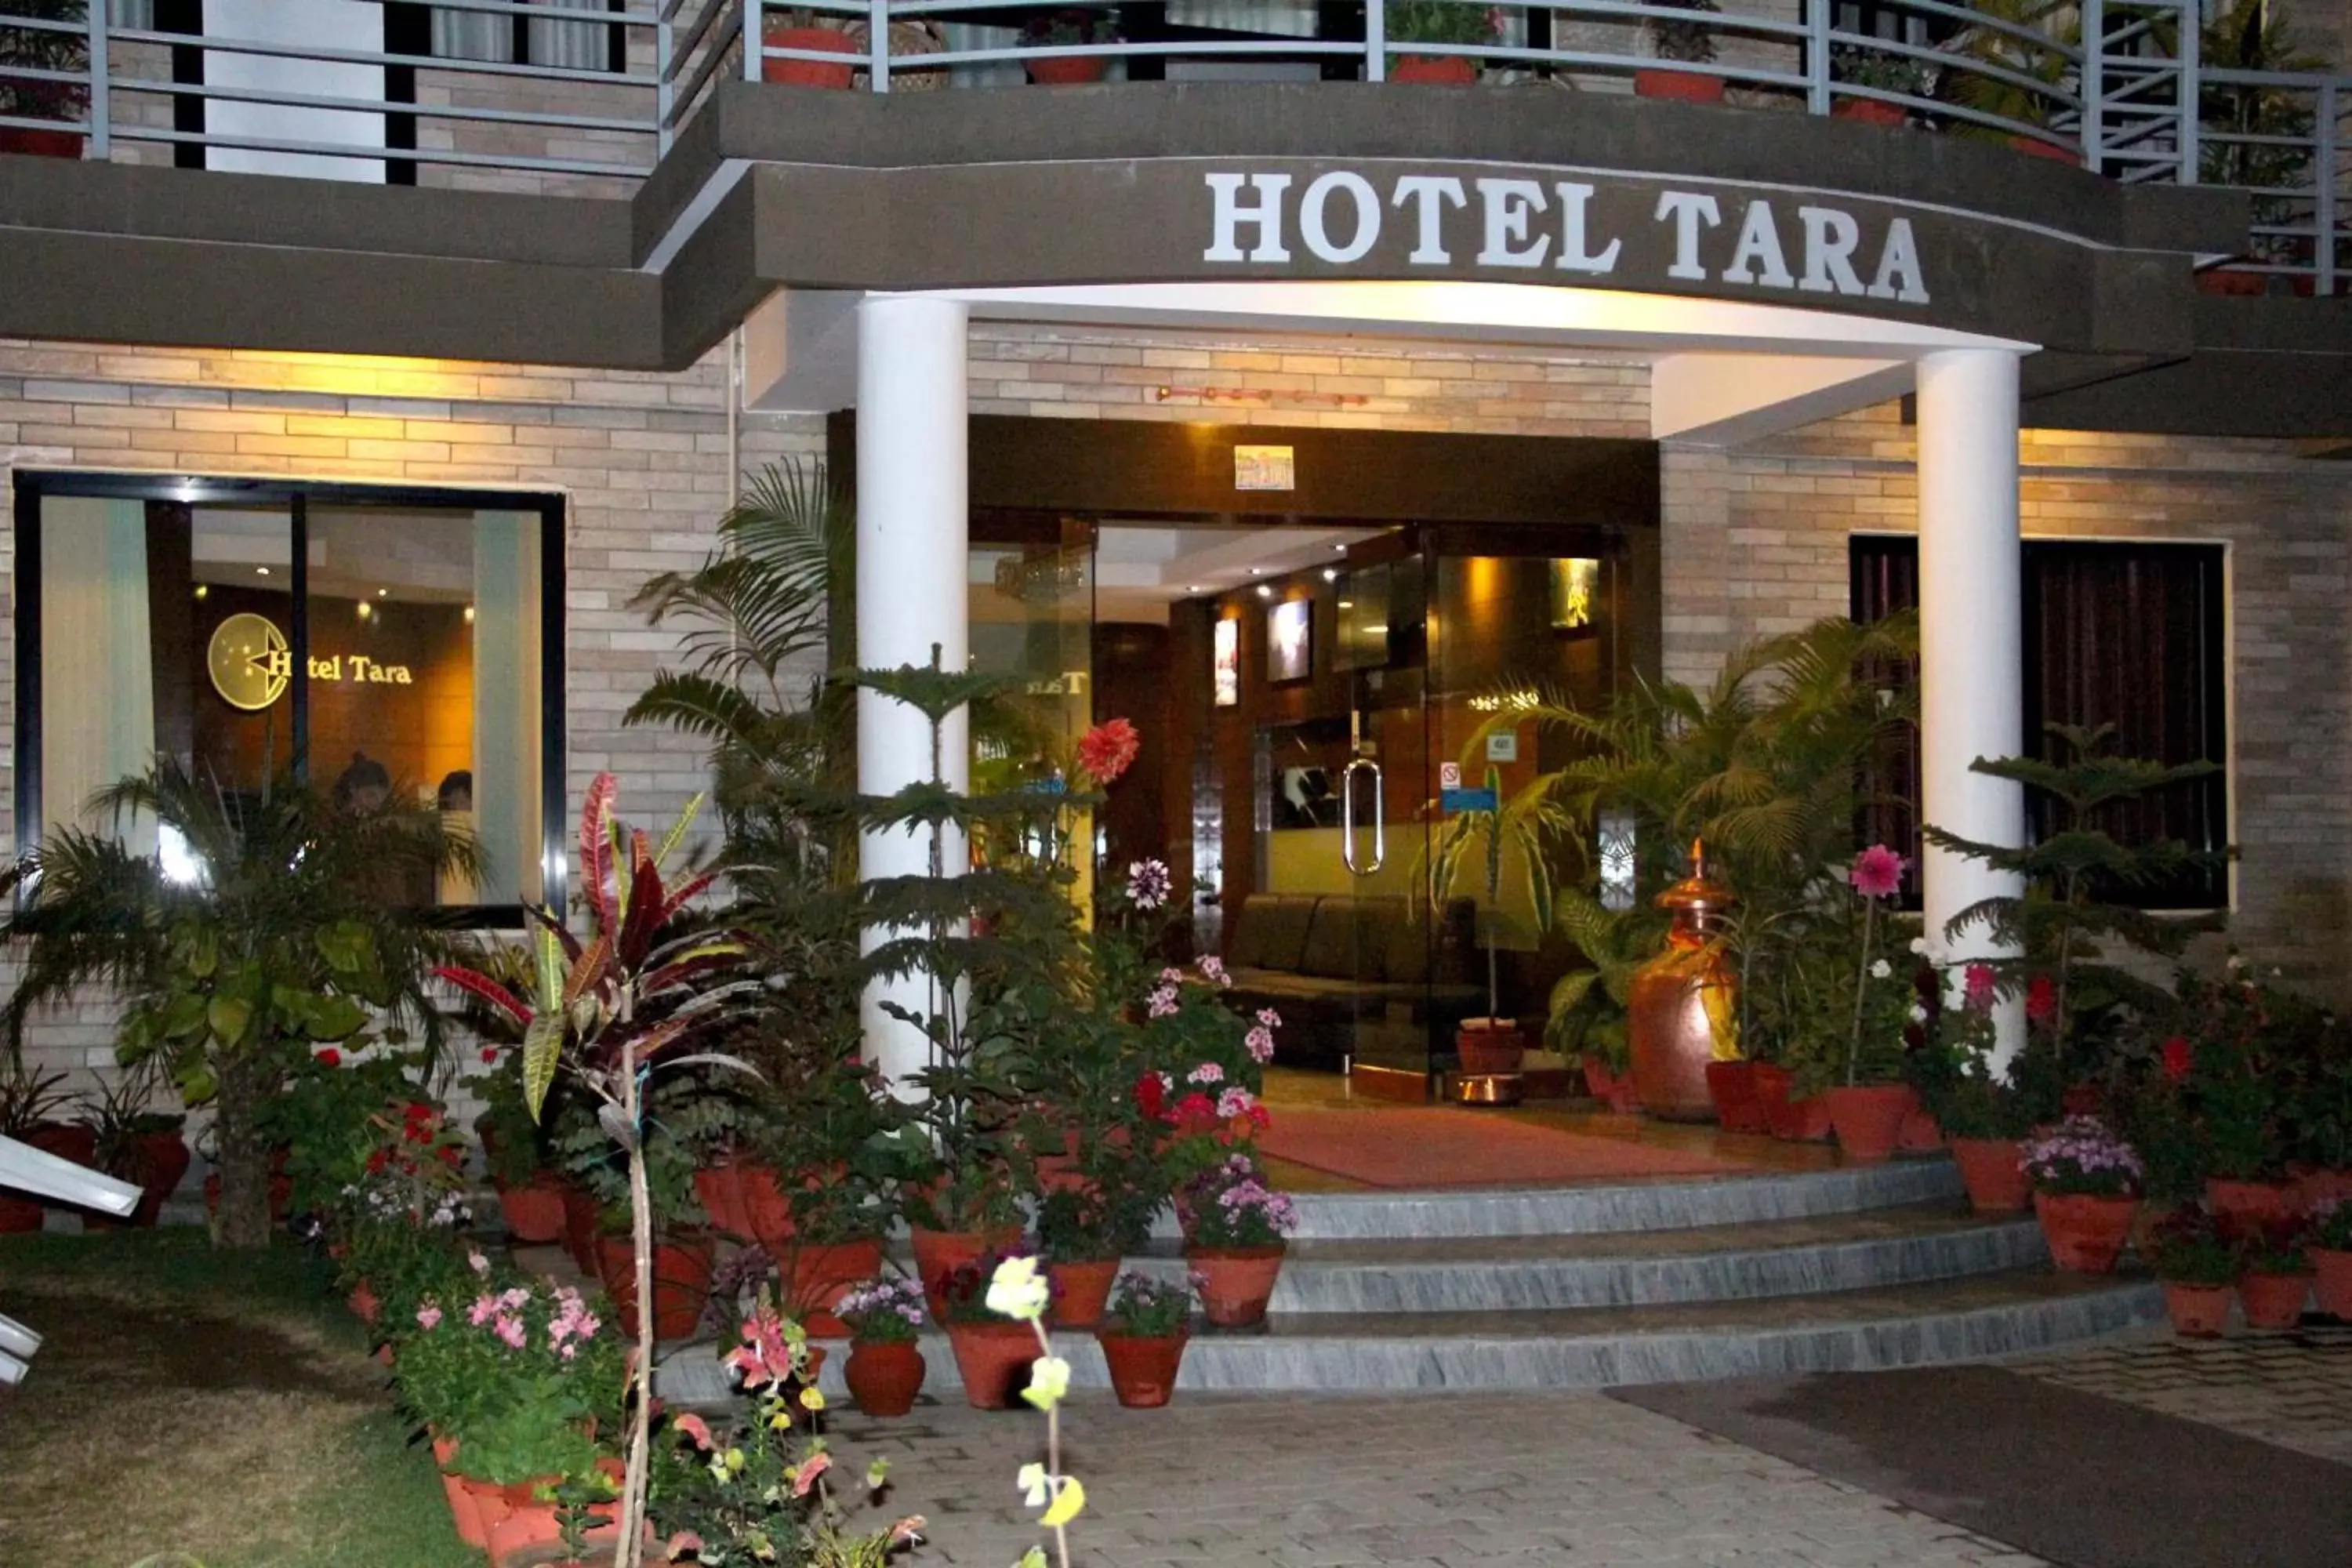 Facade/entrance in Hotel Tara